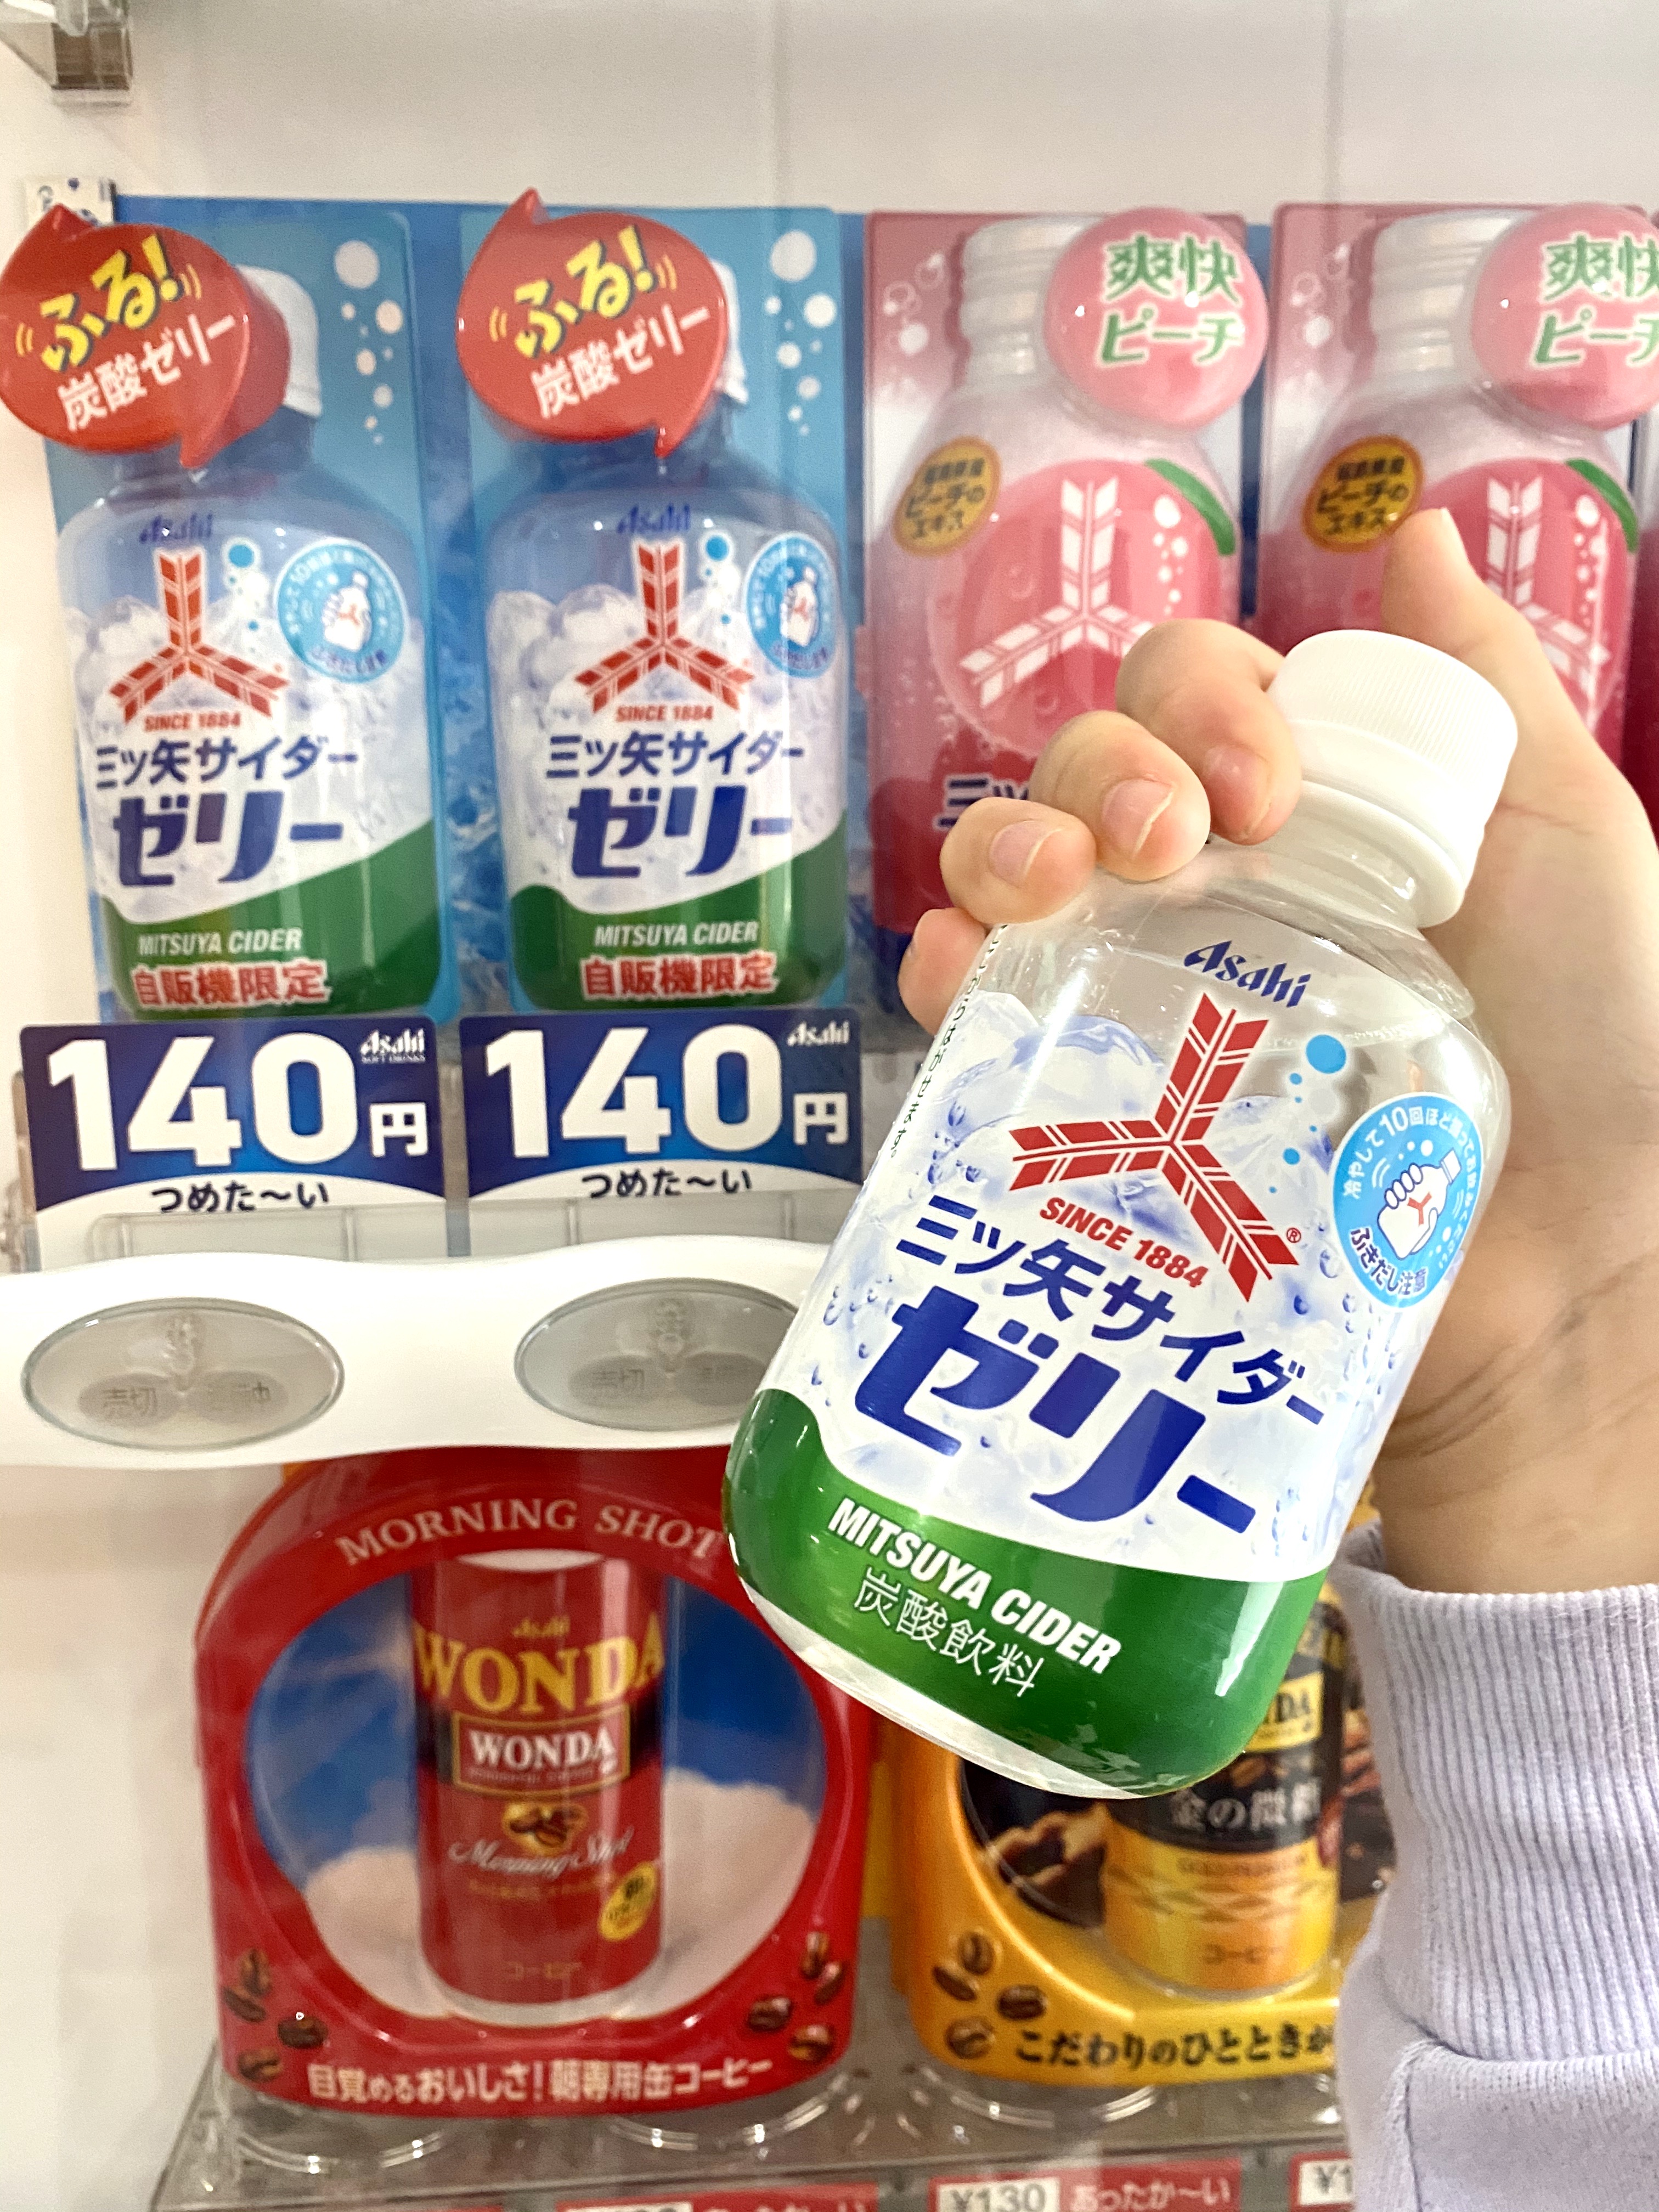 3月17日に 三ツ矢サイダー ブランドから136年の歴史で初めて ゼリー飲料が登場したみたい 自販機限定 まるごとgo 広島市安佐南区 安佐北区あたりの地域情熱ブログ